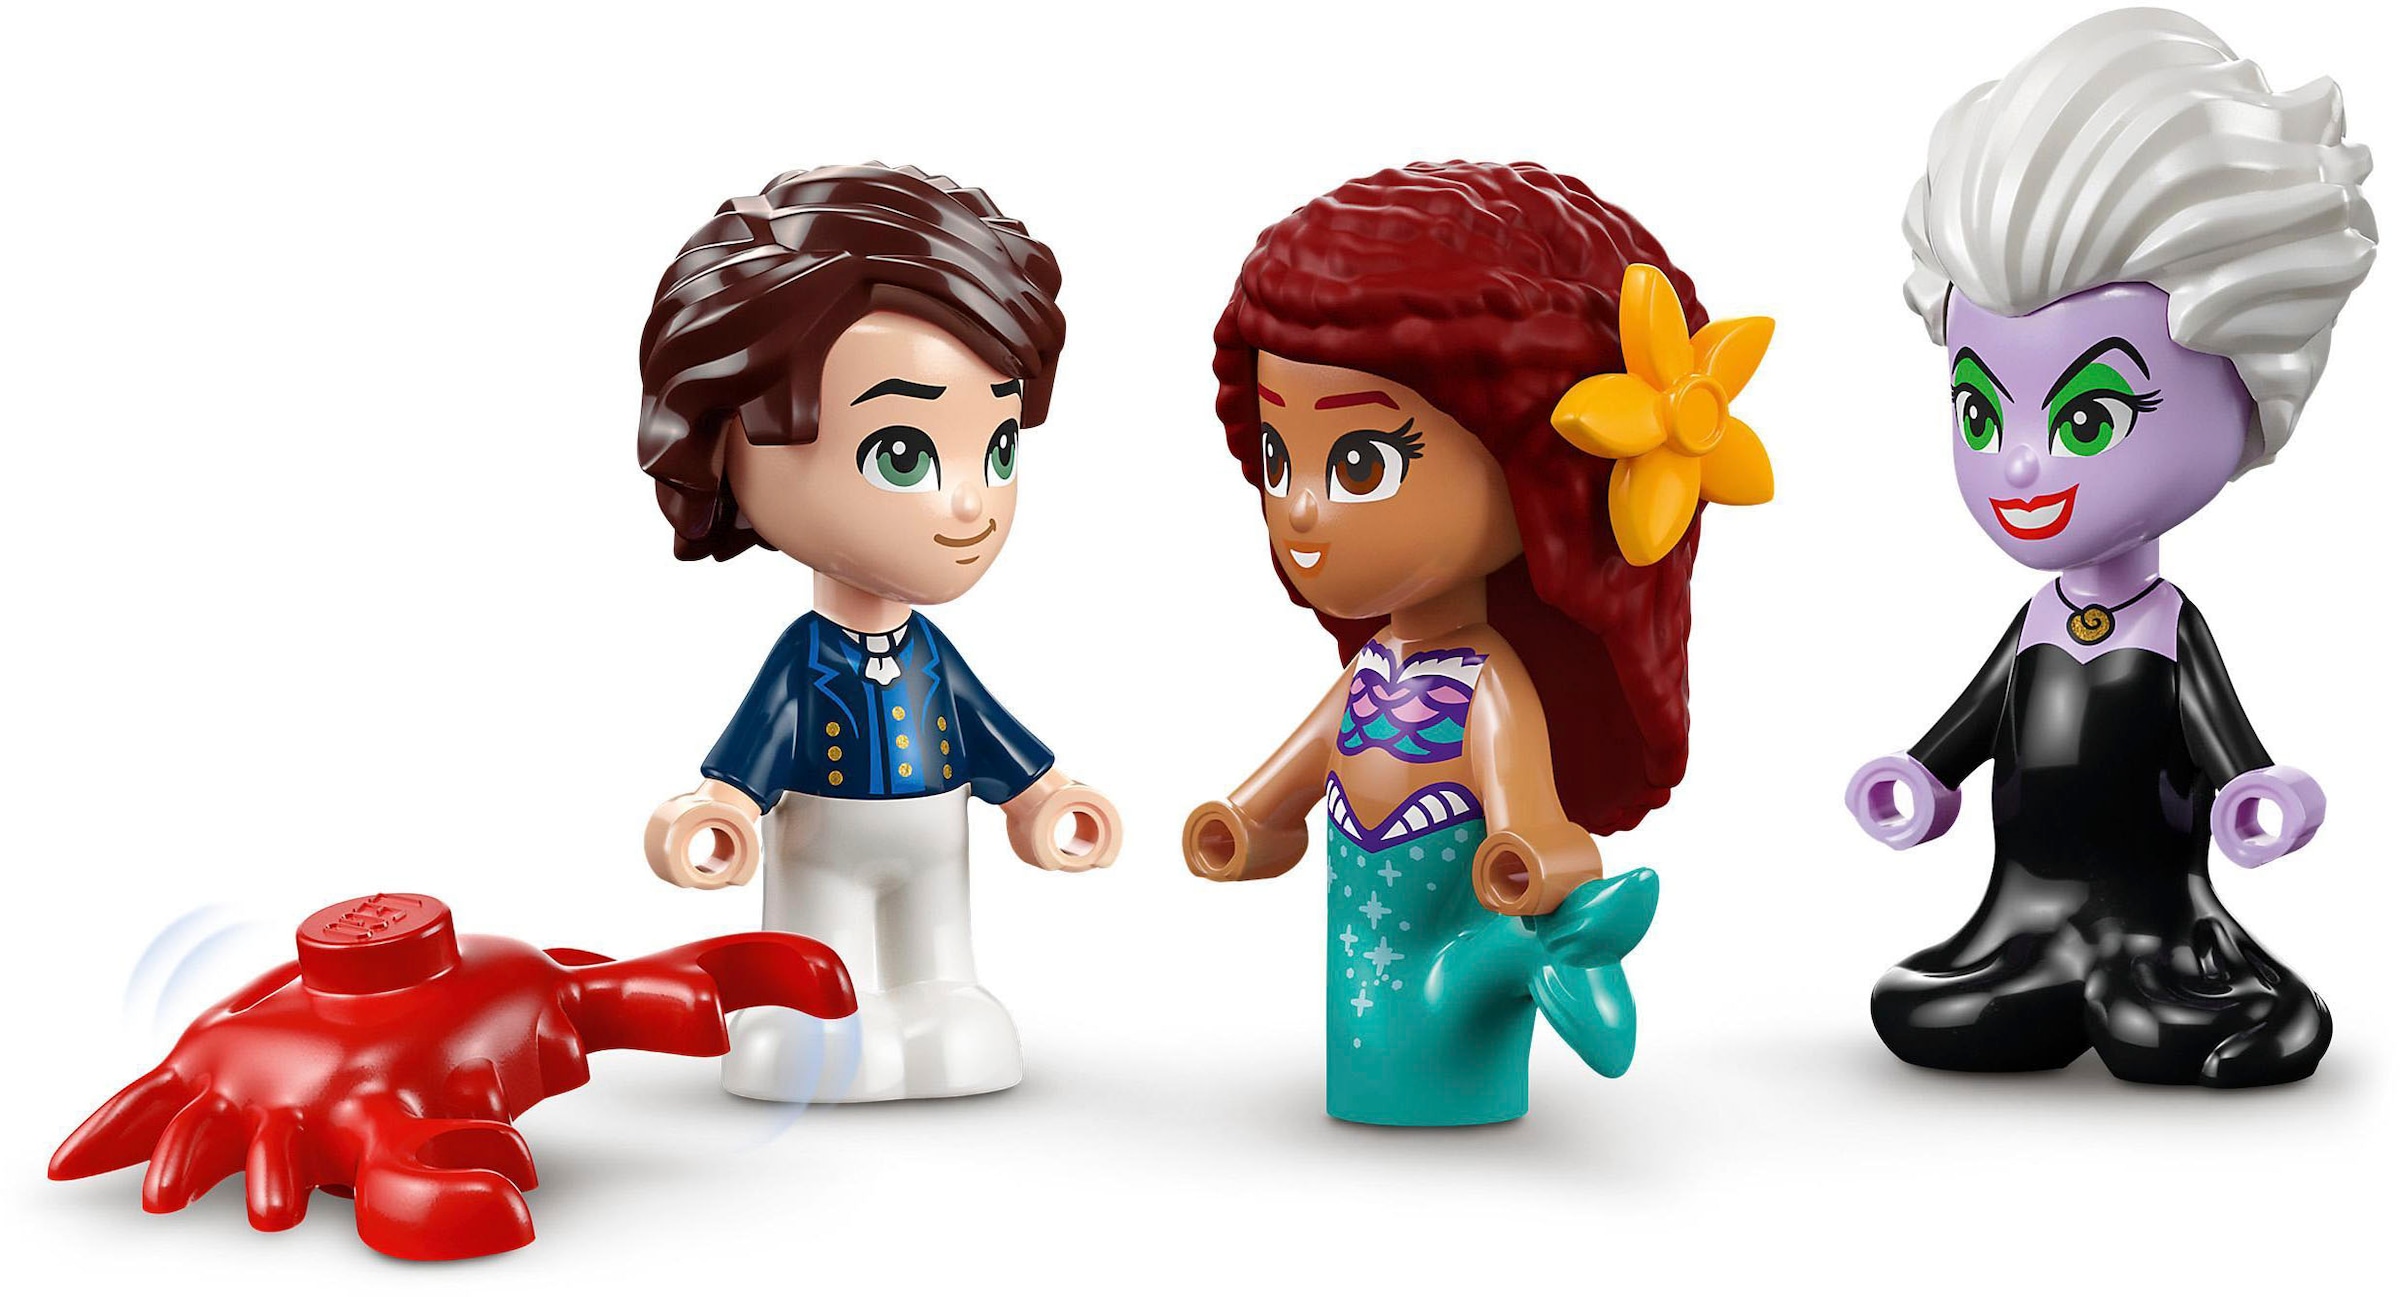 LEGO® Konstruktionsspielsteine »Die kleine Meerjungfrau – Märchenbuch (43213), LEGO® Disney Princess«, (134 St.)